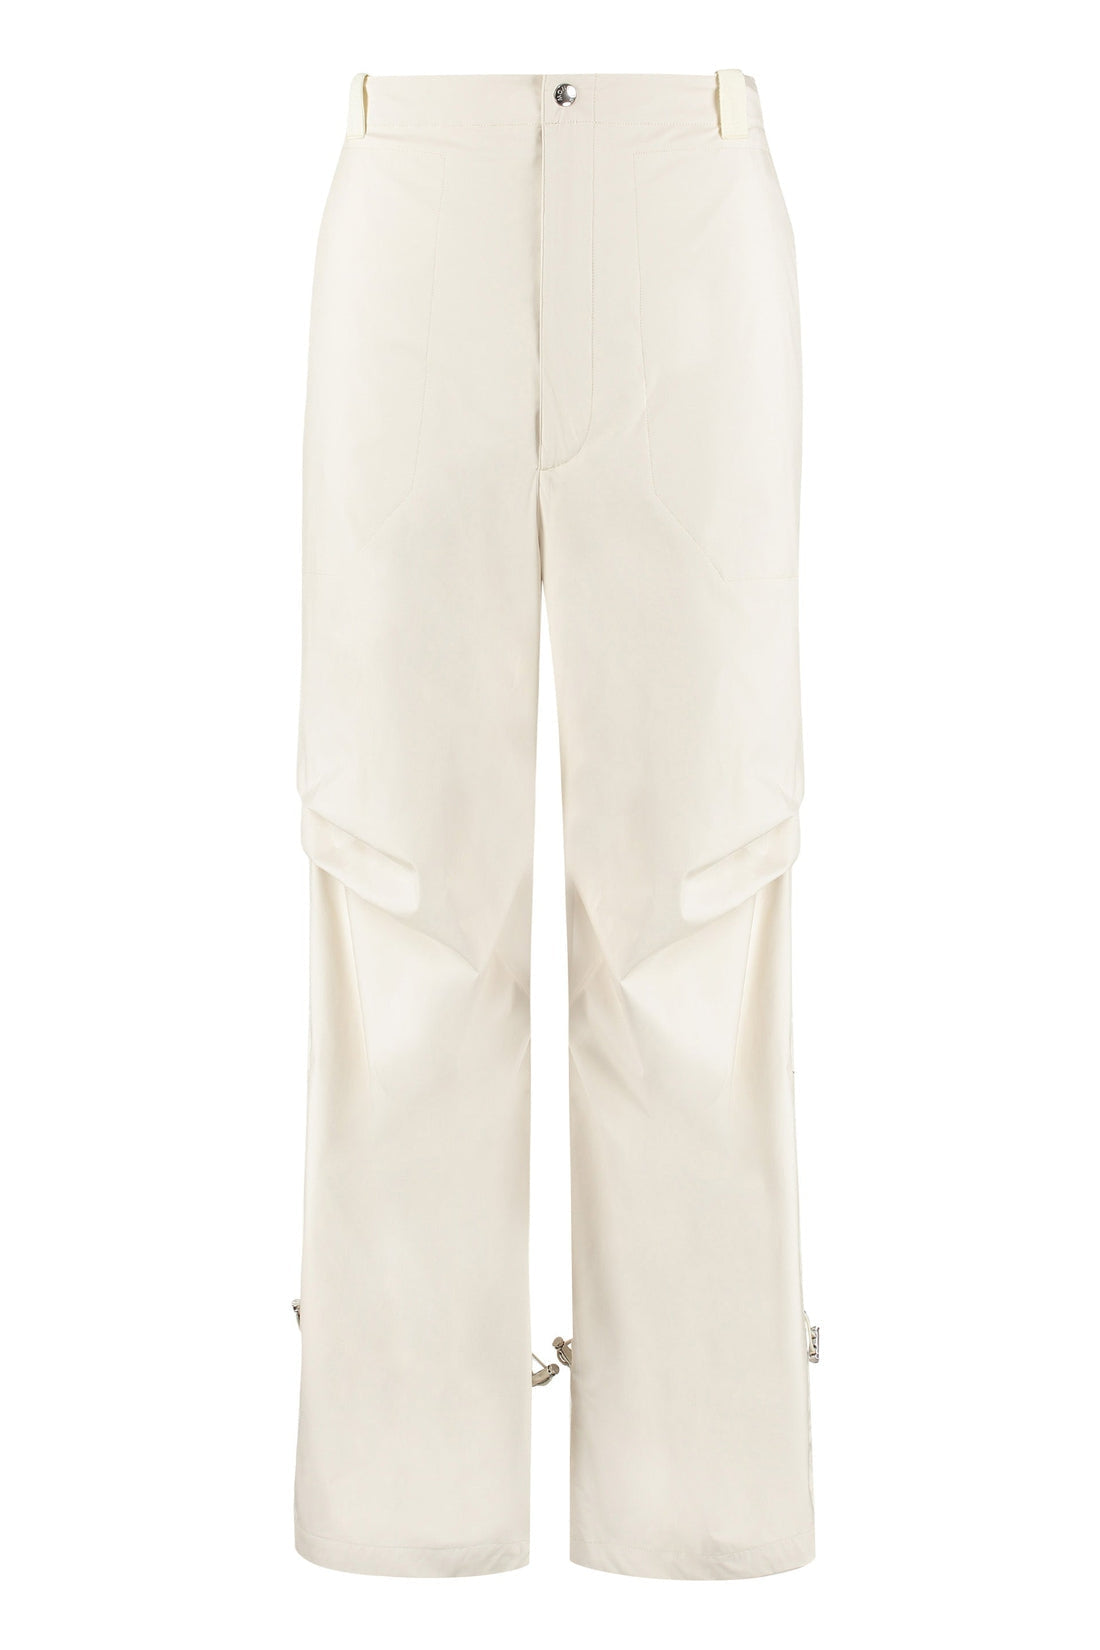 Moncler Genius-OUTLET-SALE-2 Moncler 1952 - Technical fabric pants-ARCHIVIST